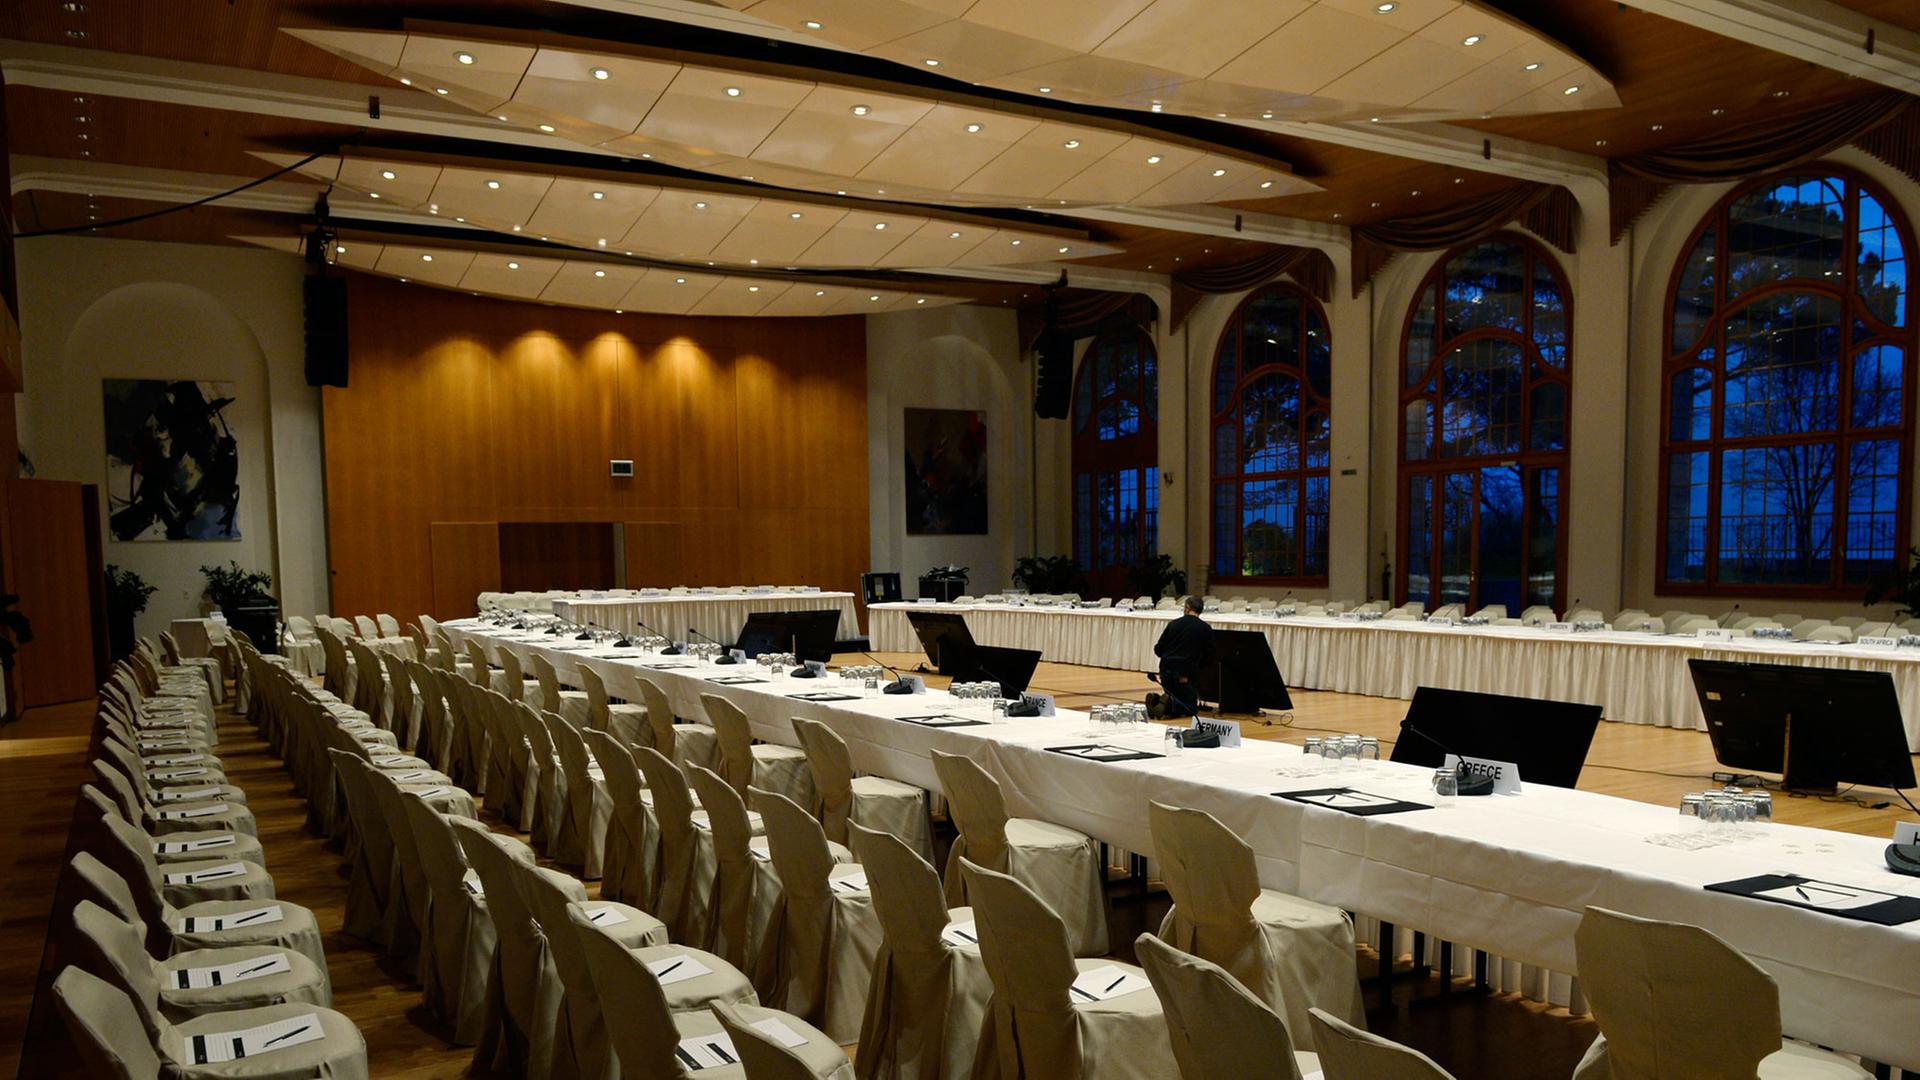 Stühle für die Teilnehmer im Konferenzcenter "Le Petit Palais" im schweizerischen Montreux, in dem die Friedenskonferenz stattfindet.